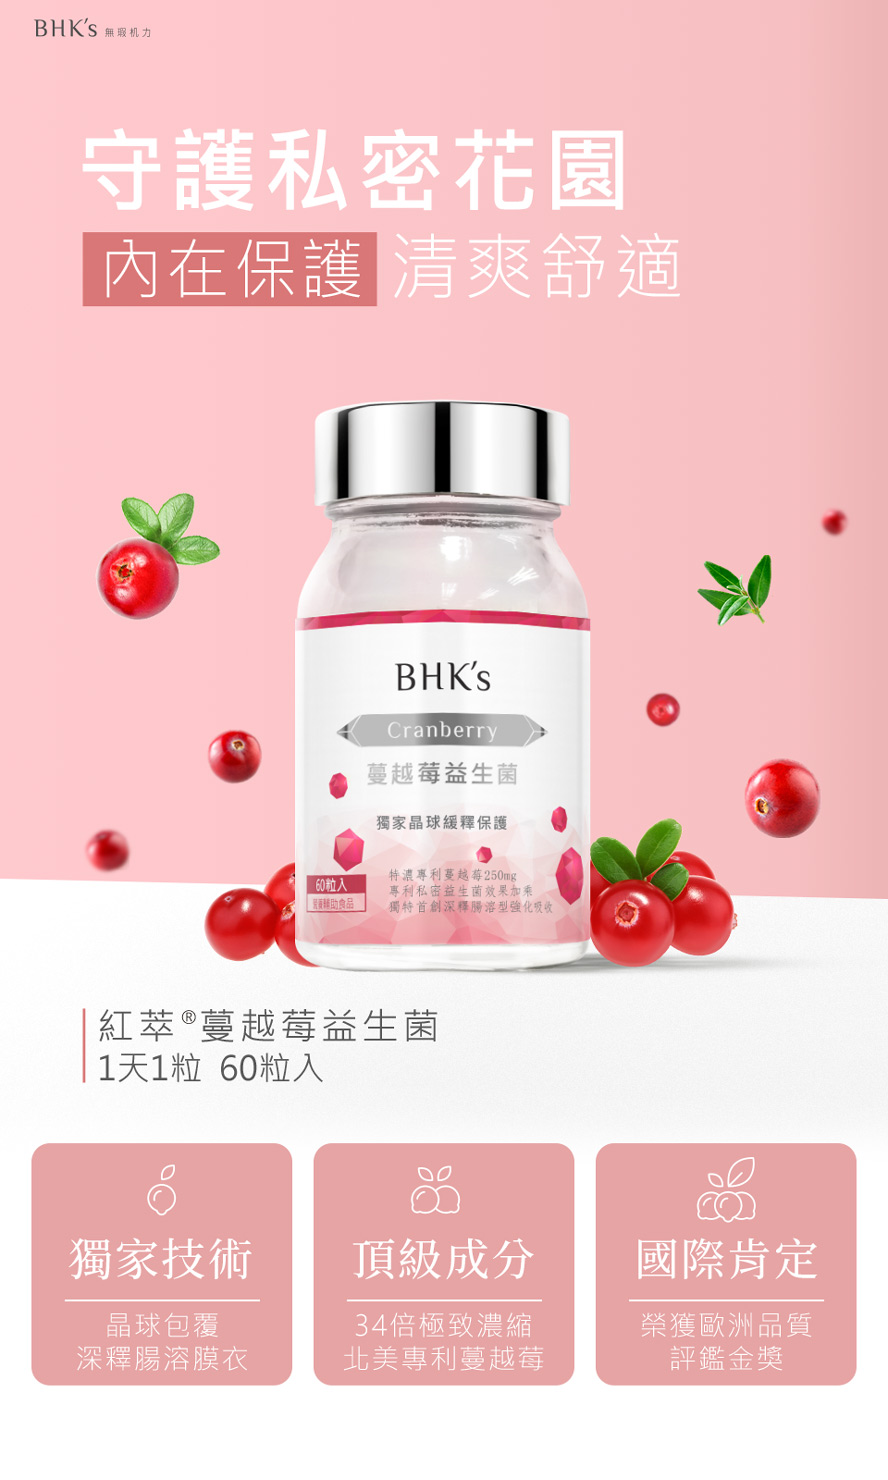 BHK's紅萃蔓越莓益生菌錠介紹。